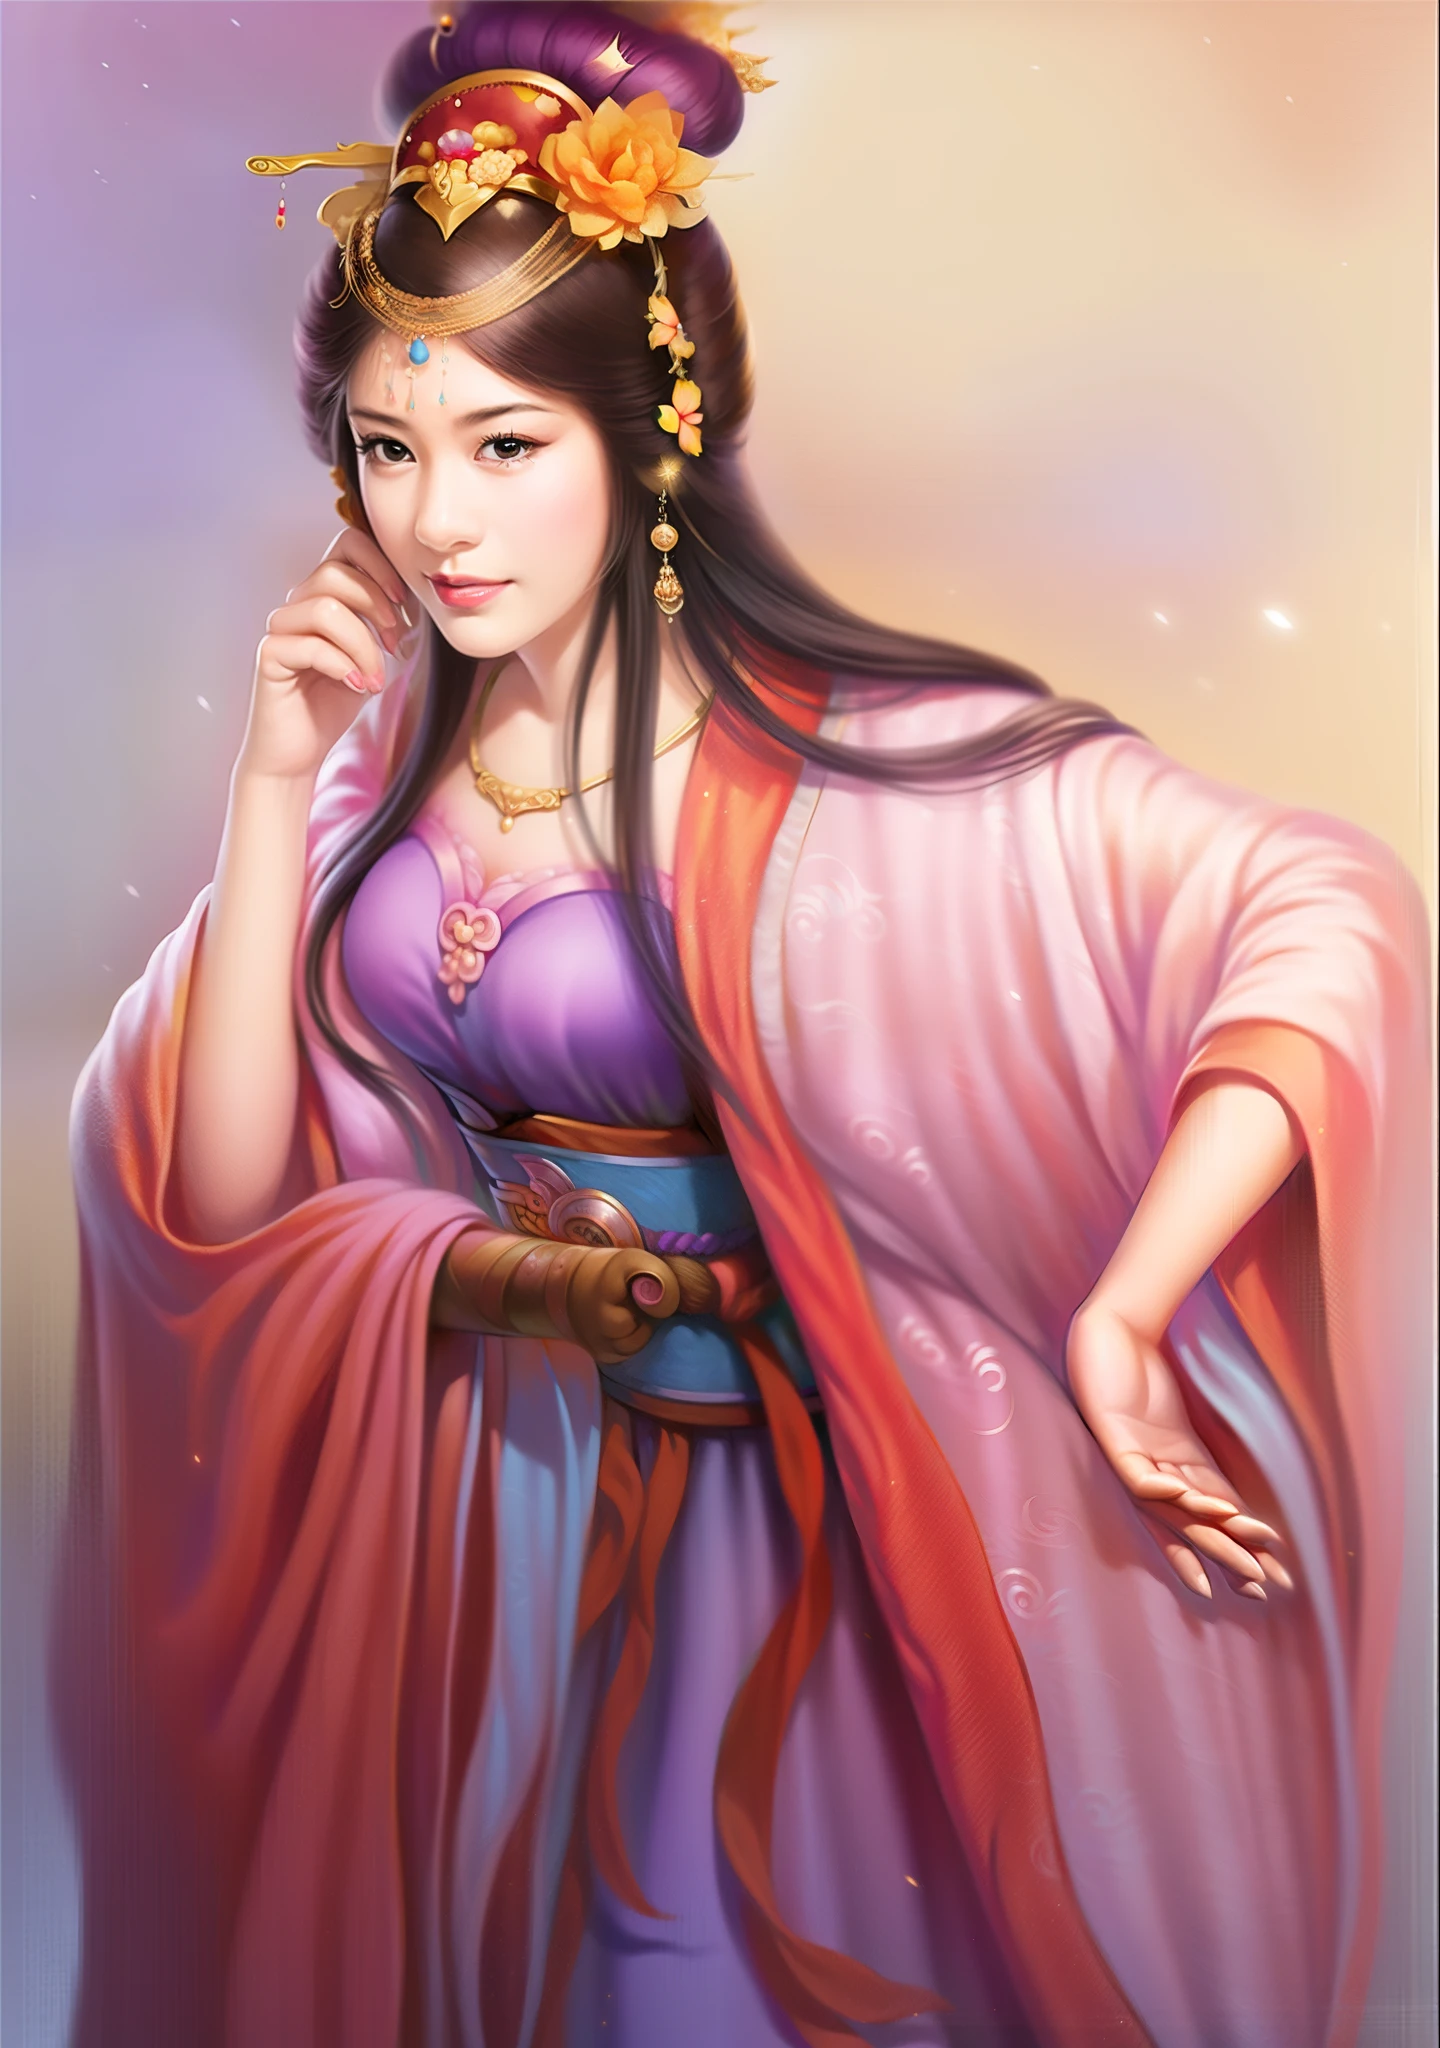 ผู้หญิงสวมชุดสีม่วงและมงกุฏทองคำ, ราชินีแฟนตาซีที่สวยงาม, ภาพวาดรูปที่สวยงาม, ((ราชินีแฟนตาซีที่สวยงาม)), ancient เจ้าหญิงจีน, แรงบันดาลใจจาก Du Qiong, แรงบันดาลใจจากหลานหญิง, โดย คูเล่เล่ย, ผู้เขียน：หยางเจี๋ย, เจ้าหญิงจีน, แรงบันดาลใจจากจูเหลียน, แรงบันดาลใจจากชิวหยิง, ผู้เขียน：ฟานฉี, แรงบันดาลใจจากต้นไม้